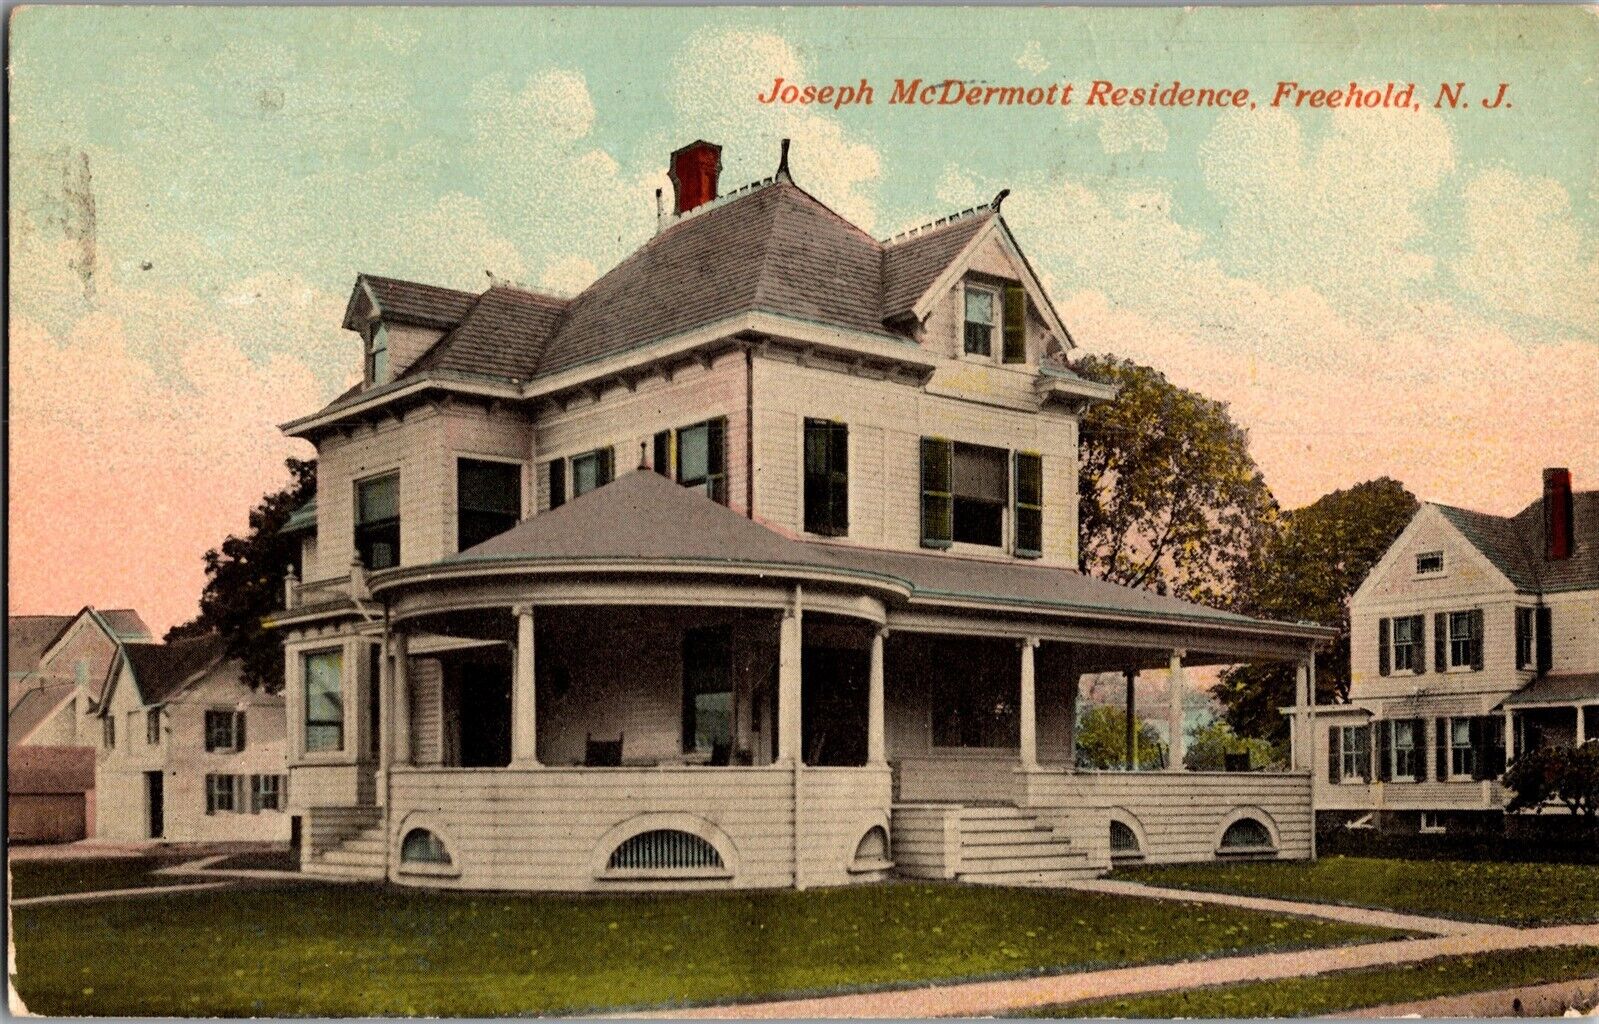 Joseph McDermott Residence, Freehold NJ c1918 Vintage Postcard K59